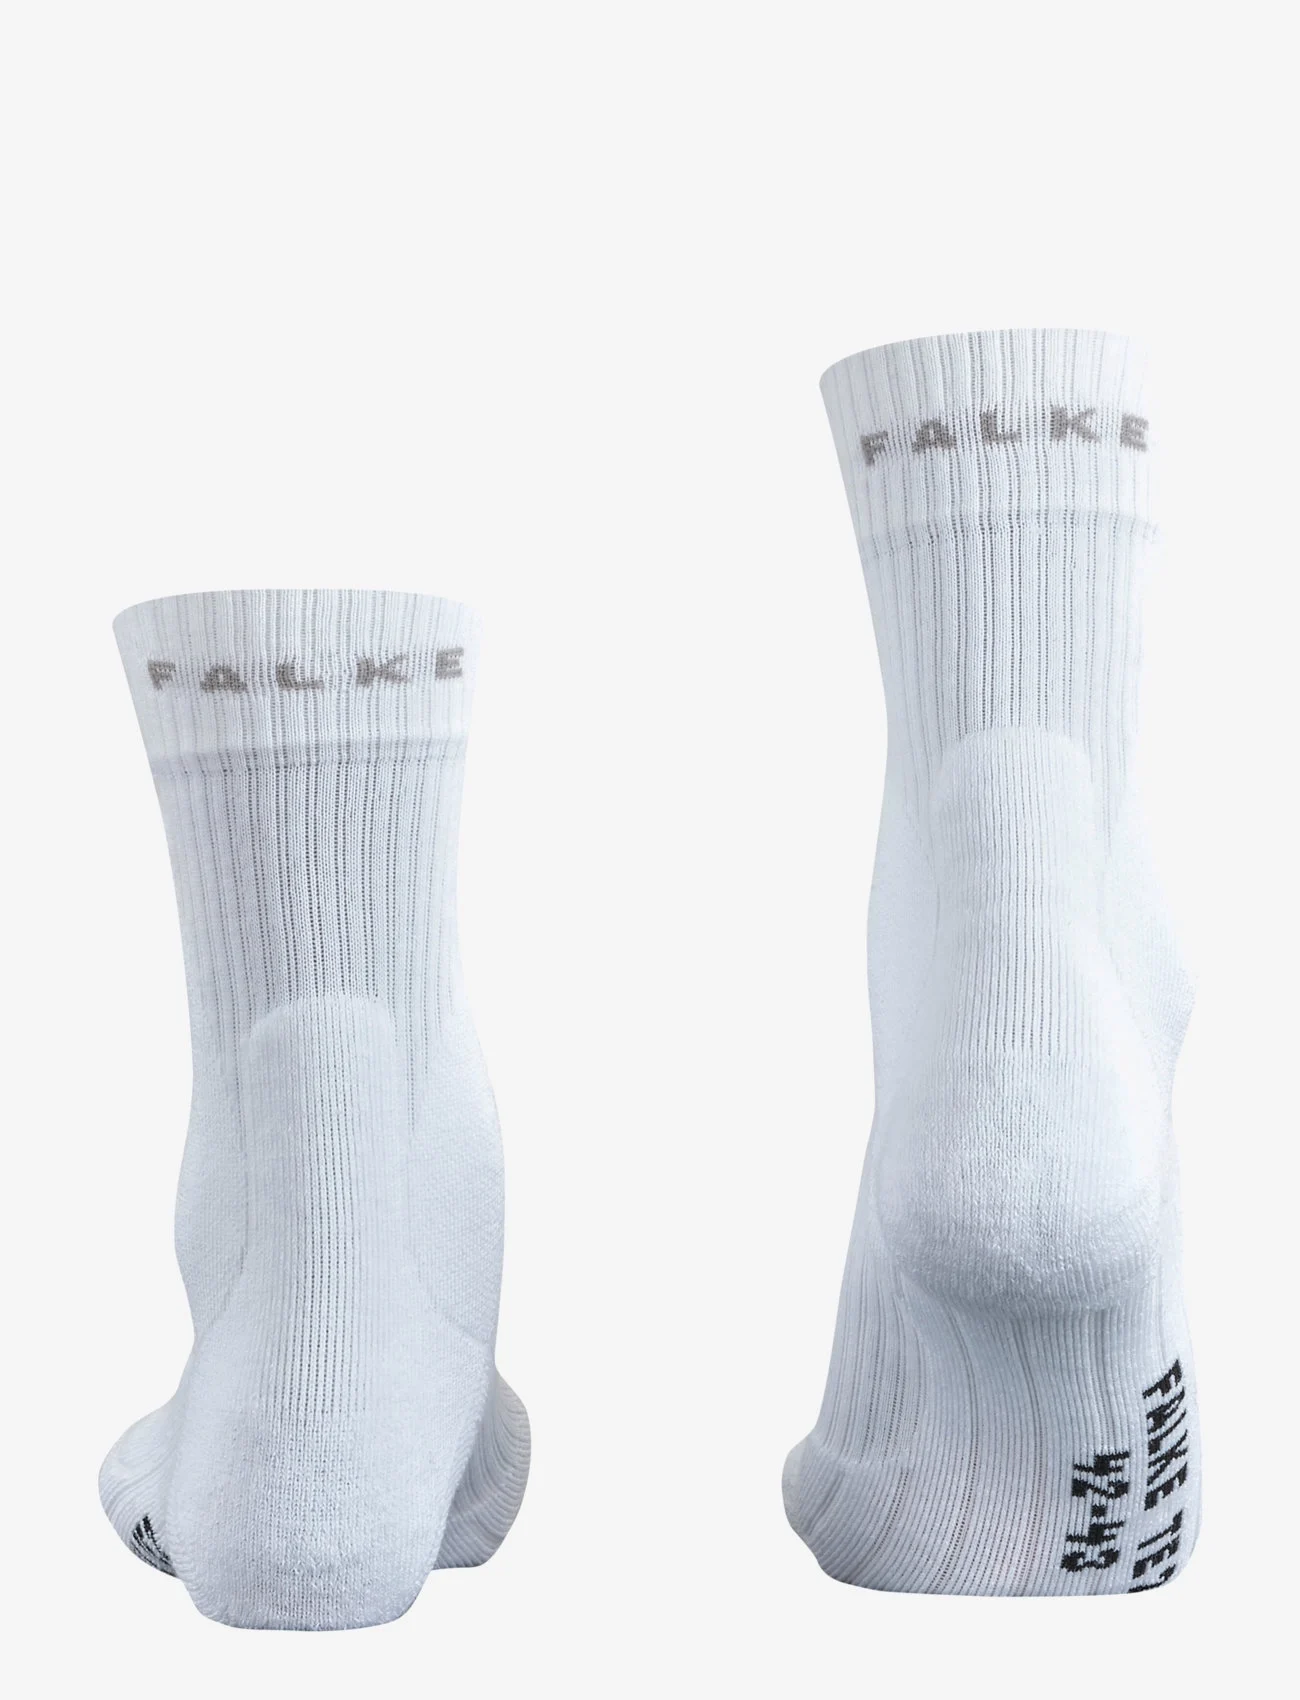 Falke Sport - FALKE TE2 - lägsta priserna - white - 1